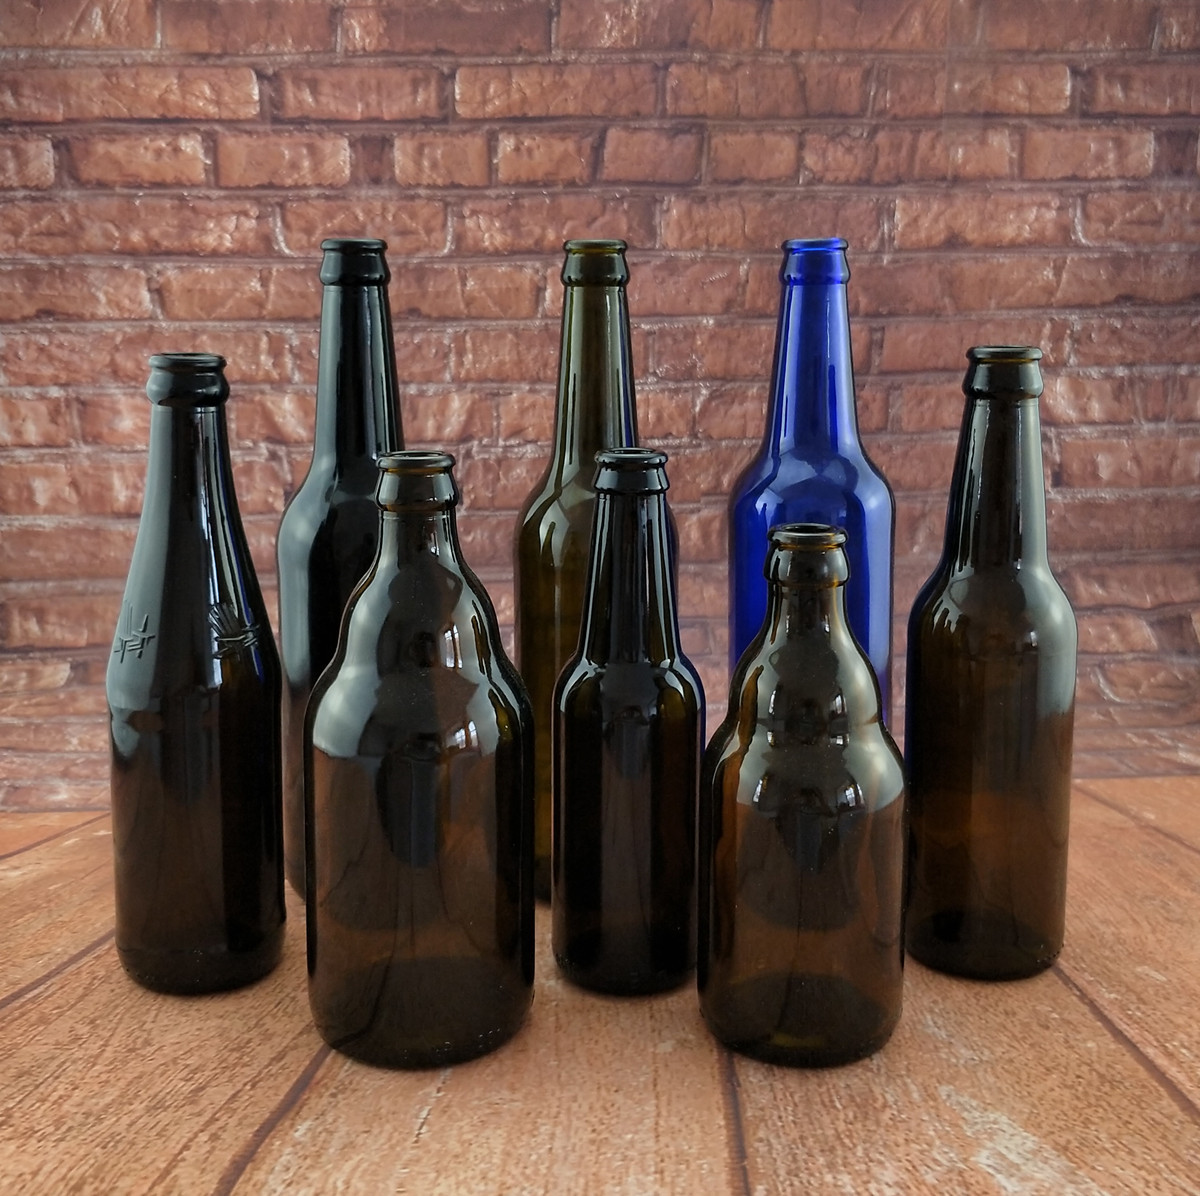 250ml-330ml500ml啤酒瓶汽水瓶白酒瓶棕色玻璃瓶空瓶批发定制